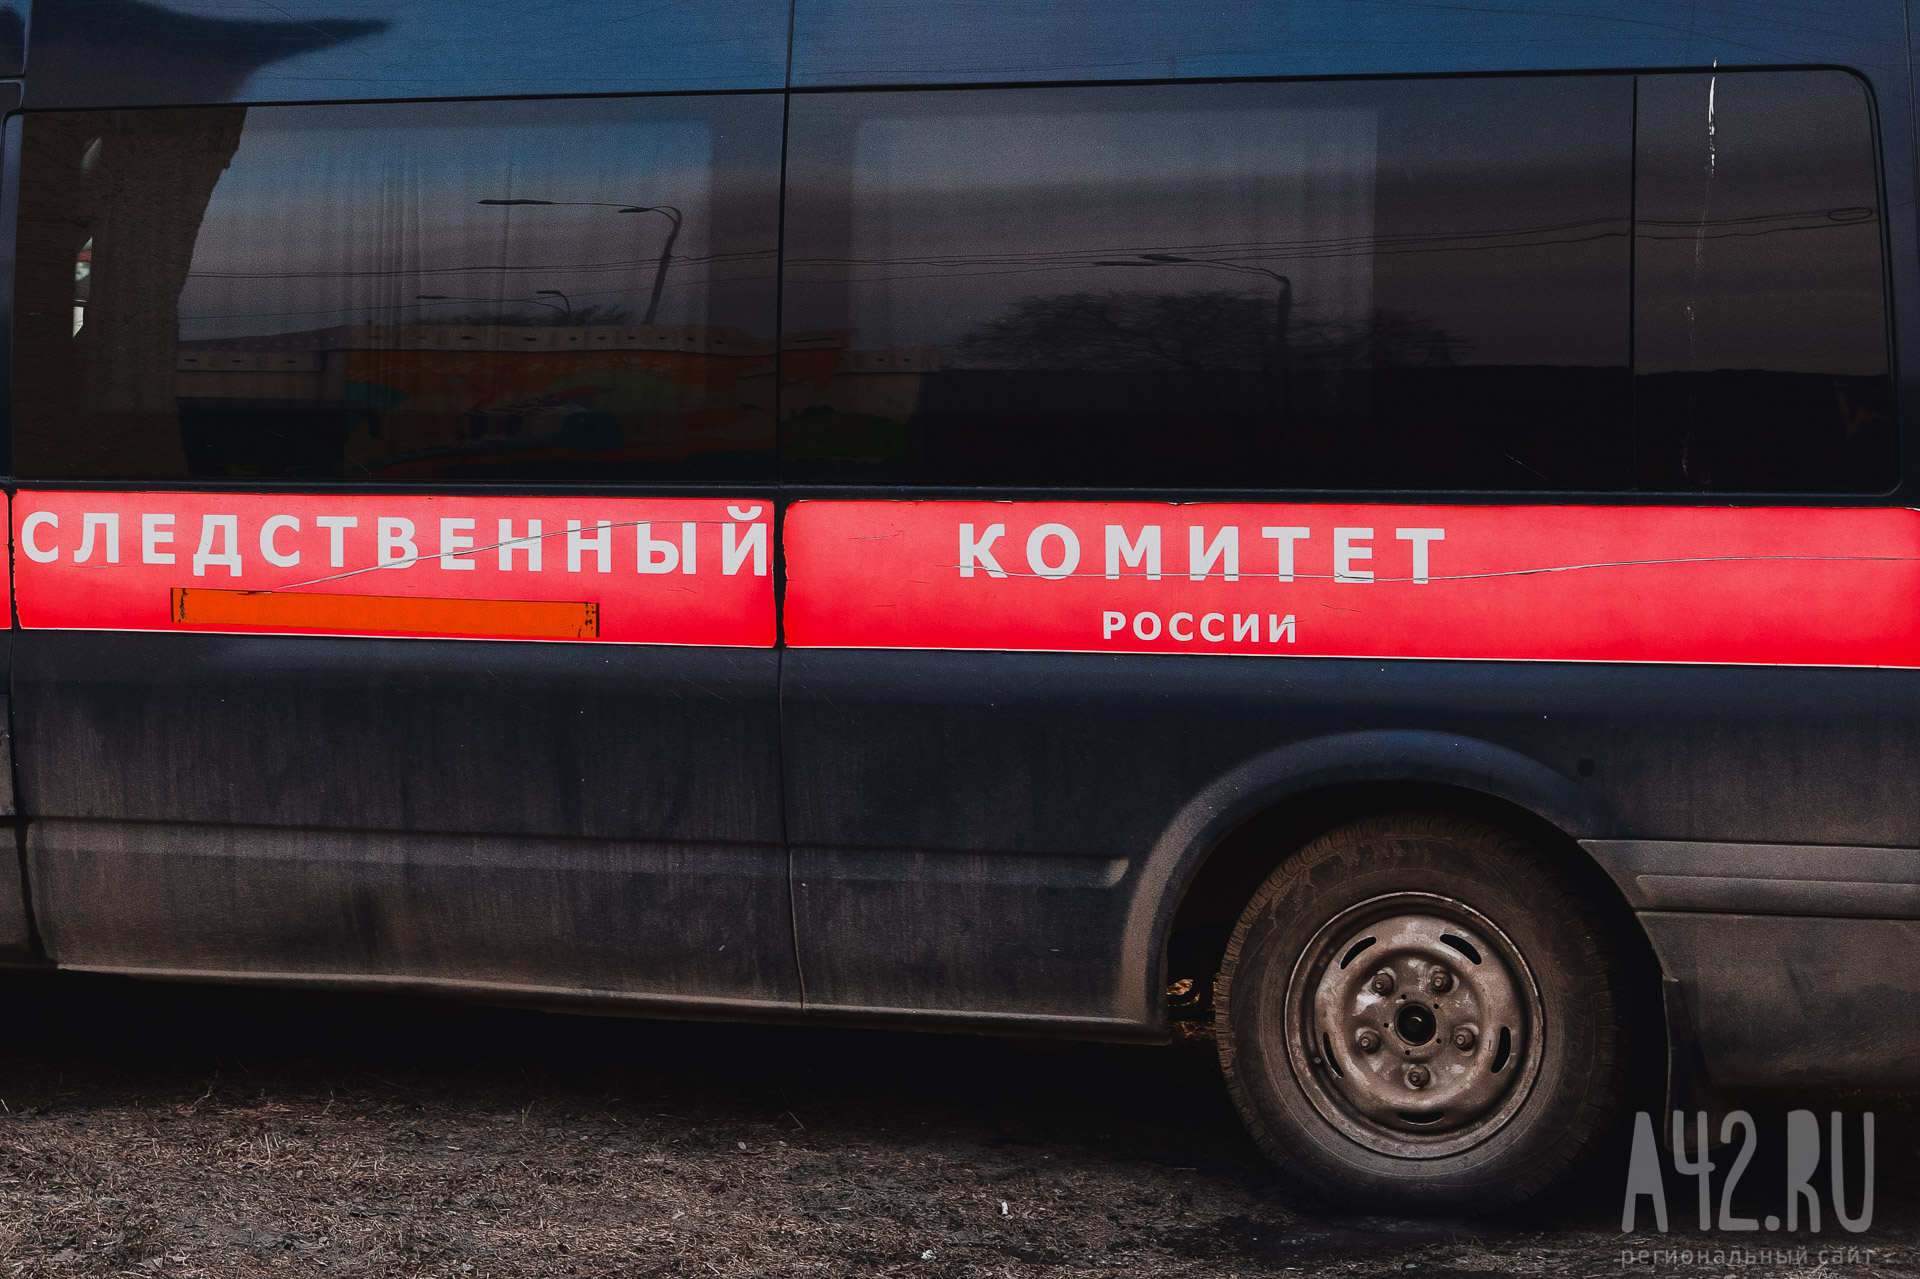 В Уфе полицейский выманил у пенсионерки более 11 миллионов рублей, убедив в том, что готовится её убийство